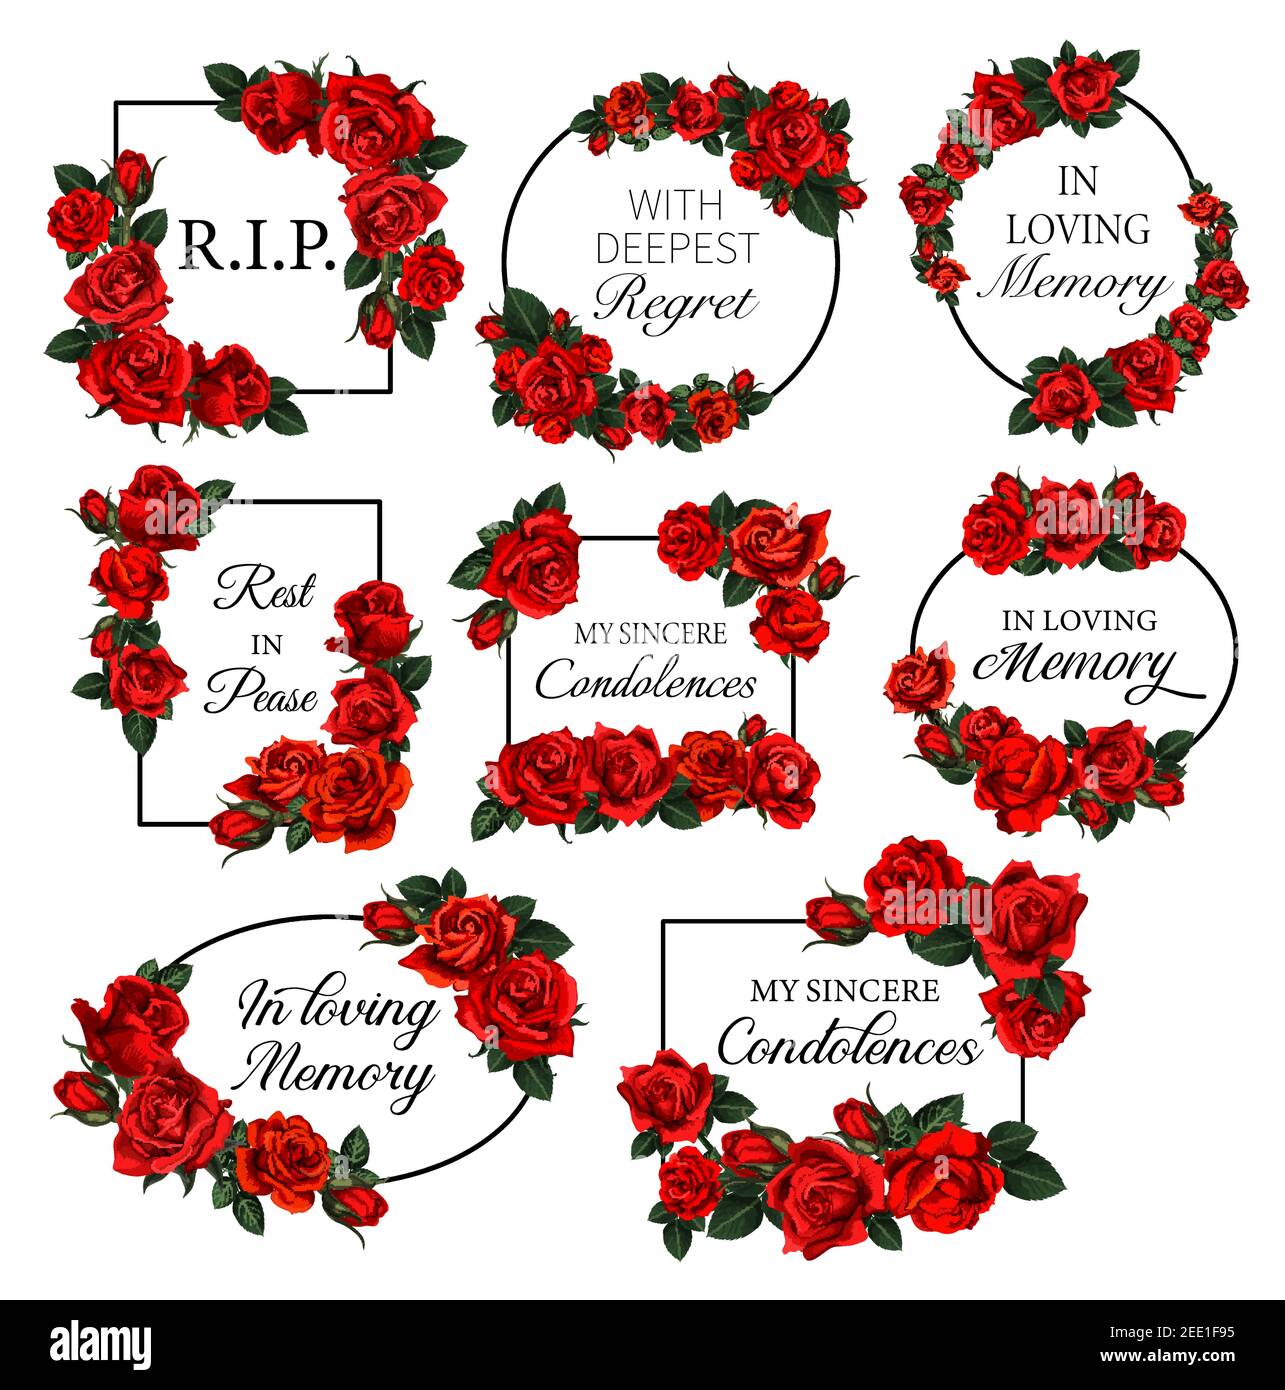 Cadres funéraires avec fleurs roses rouges. Vecteur nécrologique cadres ronds et carrés avec RIP res en paix, en mémoire aimante condoléances et fleur gravée Illustration de Vecteur